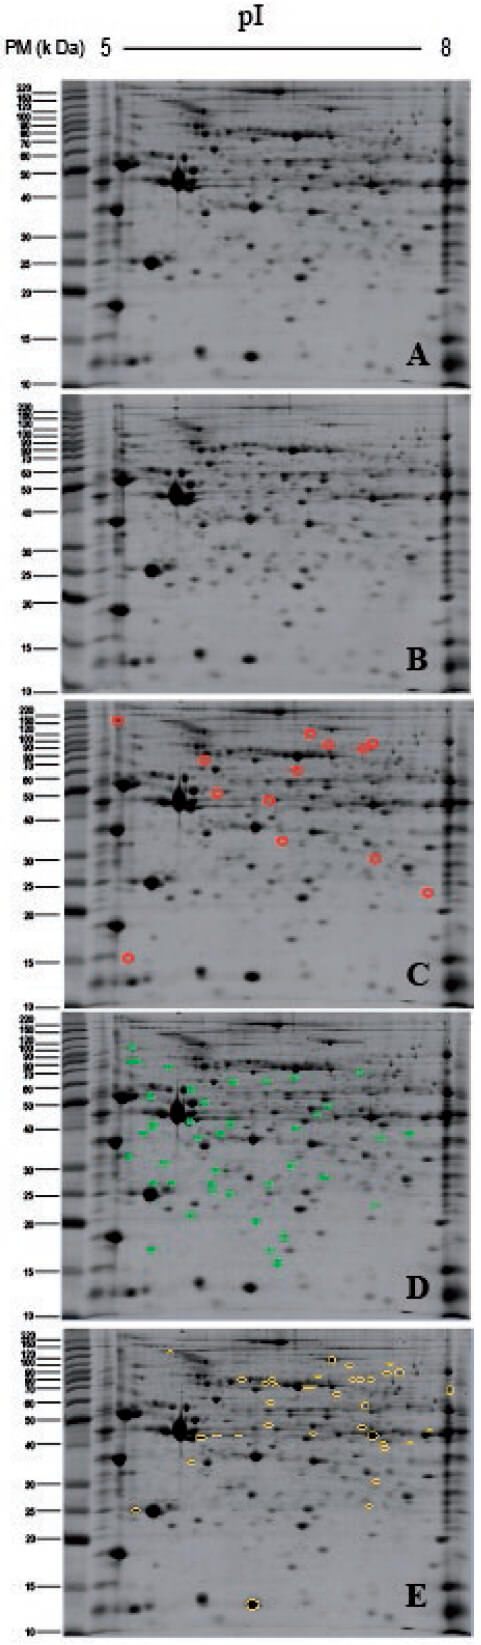 Figura 3 Perfiles proteícos de la pared ventricular izquierda de corazón de rata SpragueDawley del grupo ADR respecto al grupo CON, a las seis semanas post-tratamiento. A: Perfil proteíco del grupo CON. B: Perfil proteíco del grupo ADR. C: Perfil proteíco del grupo CON, señalando en círculo, los puntos proteicos ausentes en el perfil proteíco del grupo ADR, a las seis semanas post-tratamiento. D: Perfil proteíco del grupo CON, señalando en círculo, los puntos proteicos, que presentaron un incremento en su abundancia relativa (DO > 1,5), estadísticamente significativa (±1,5 veces; p ˂ 0,05 t-Students), en el perfil proteíco del grupo ADR respecto al del grupo CON. E: Perfil proteíco del grupo CON, señalando en círculo, los puntos proteicos, que presentaron una reducción en su abundancia relativa (DO ˂ 1,5), estadísticamente significativa (±1,5 veces; p ˂ 0,05 t-Students), en el perfil proteíco del grupo ADR respecto al del grupo CON. Todas las muestras fueron procesadas por duplicado bajo las mismas condiciones: 150 μg de proteínas, tiras de pH (IPG) de 5-8 para el isoelectroenfoque y geles de poliacrilamida de 12,5 % en la segunda dimensión. CON: control, ADR: adriamicina (6mg/Kg p.c.).